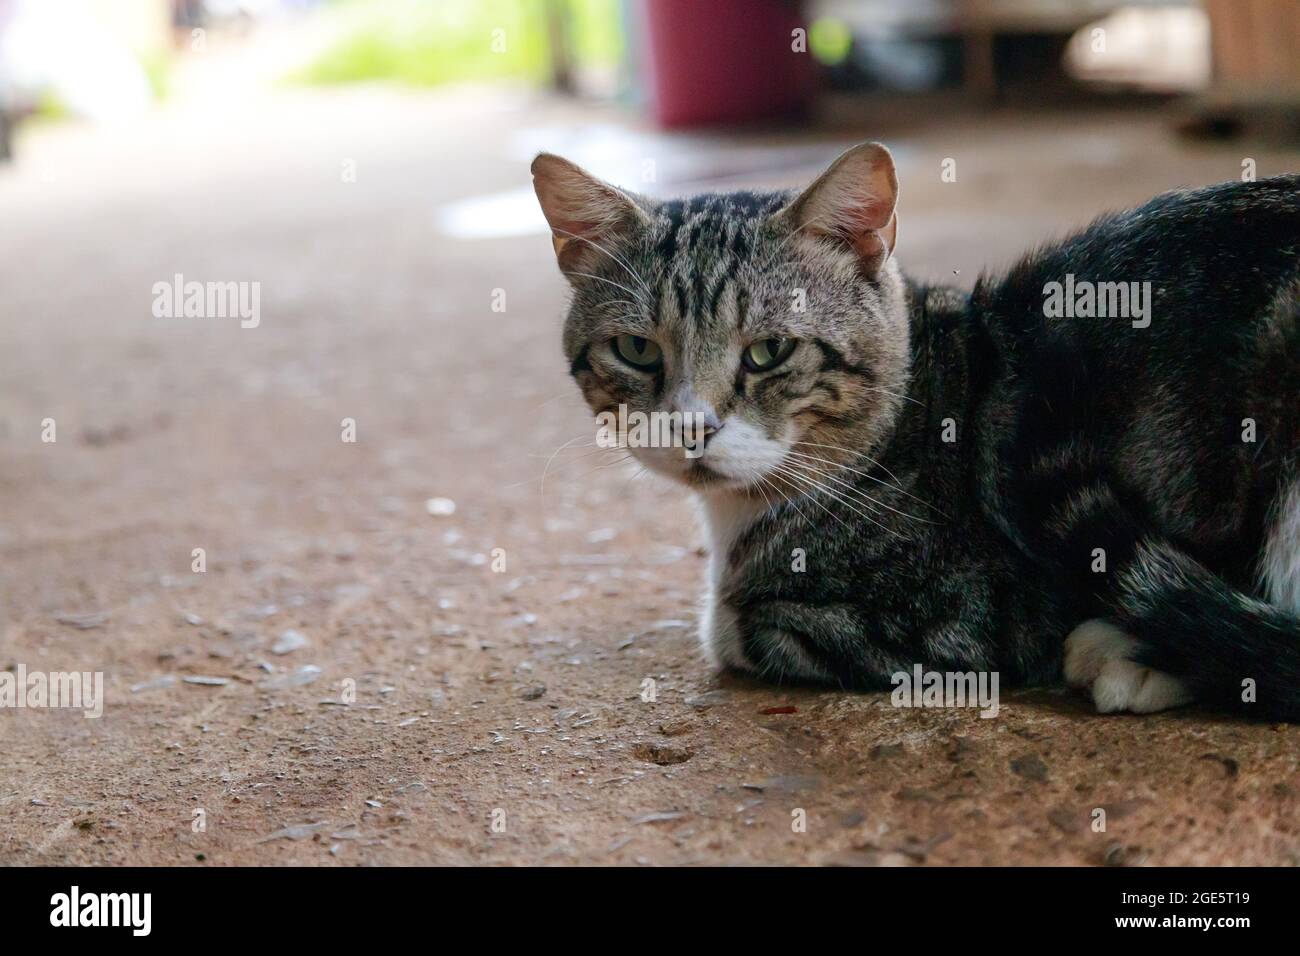 Die niedliche Thai-Katze hockt, eine Katze schaut sich die Kamera an, eine glückliche und freundliche Katze Stockfoto